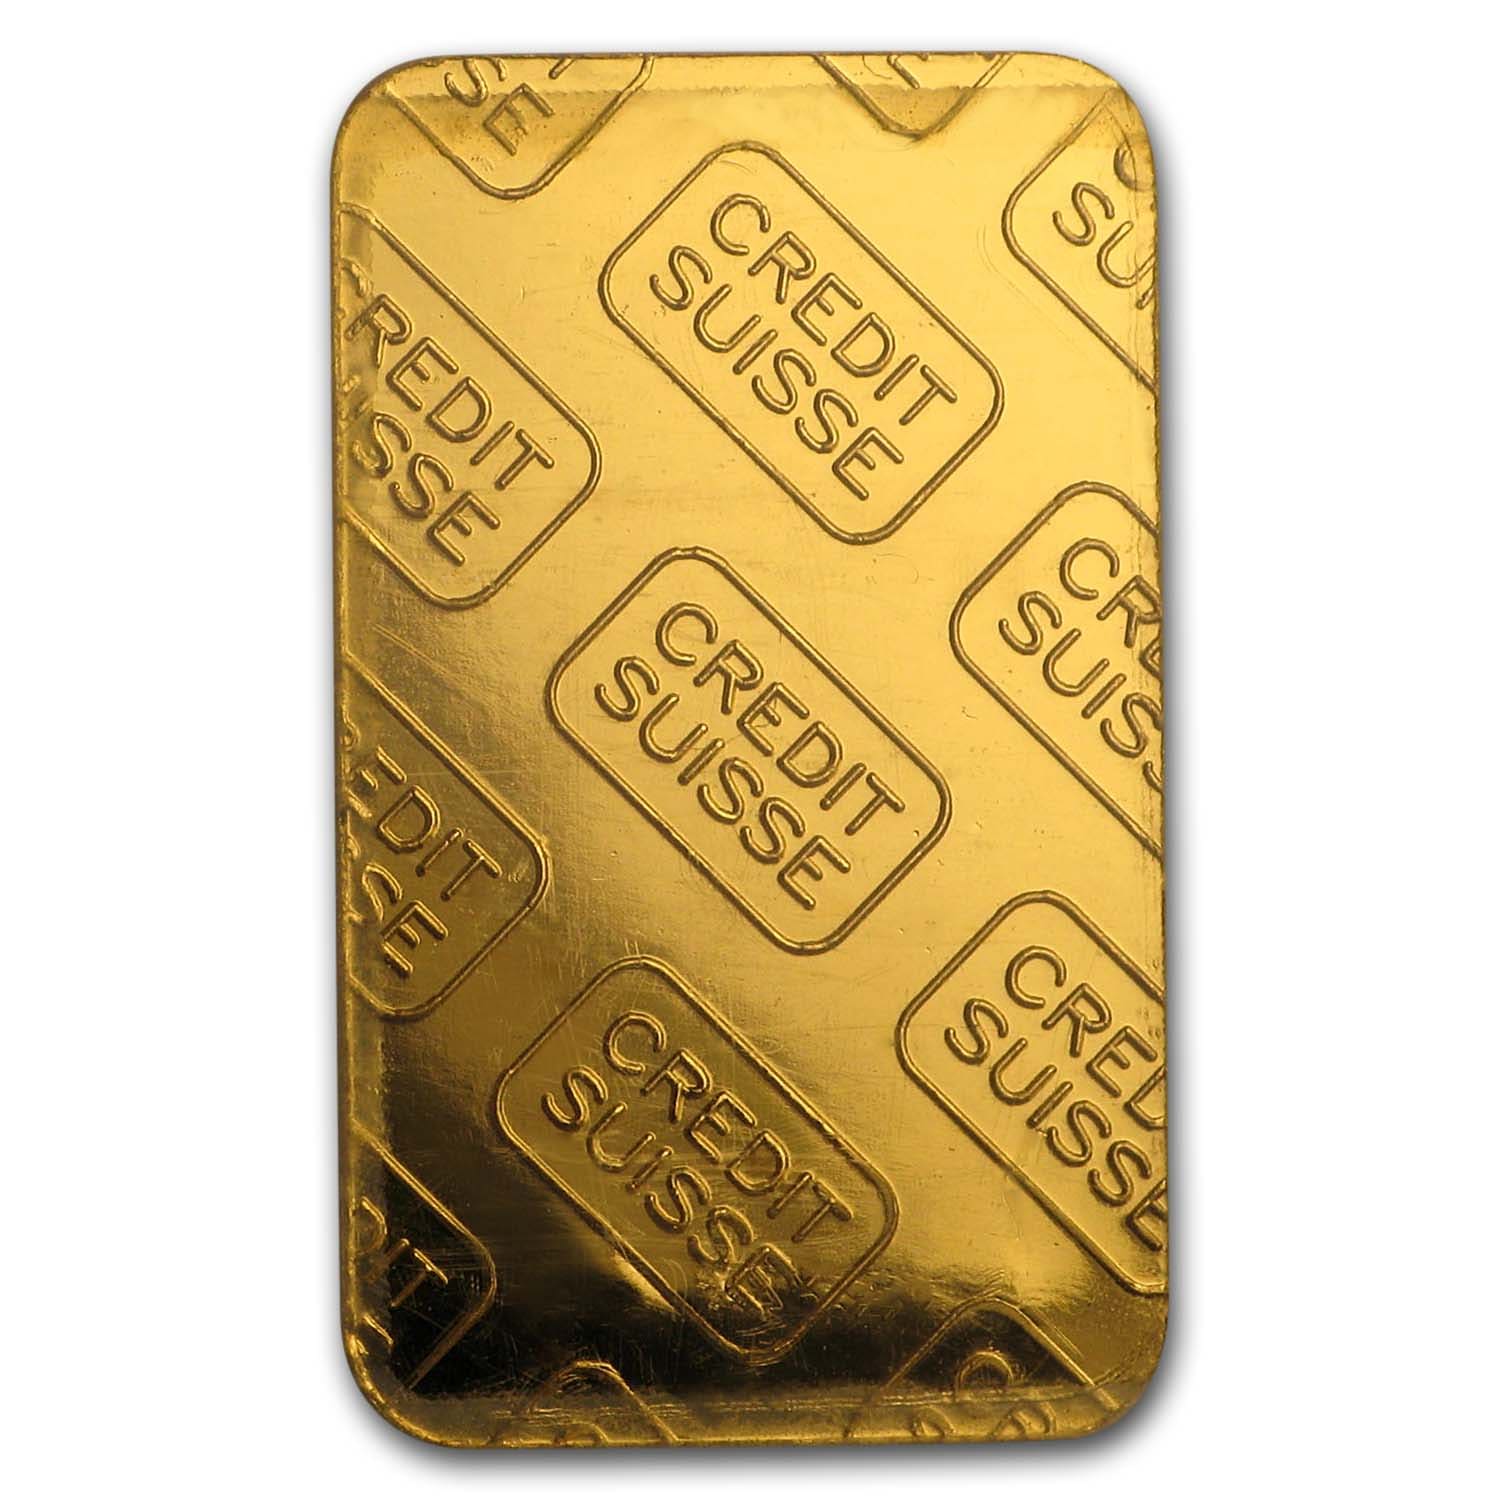 5 g credit suisse gold bar